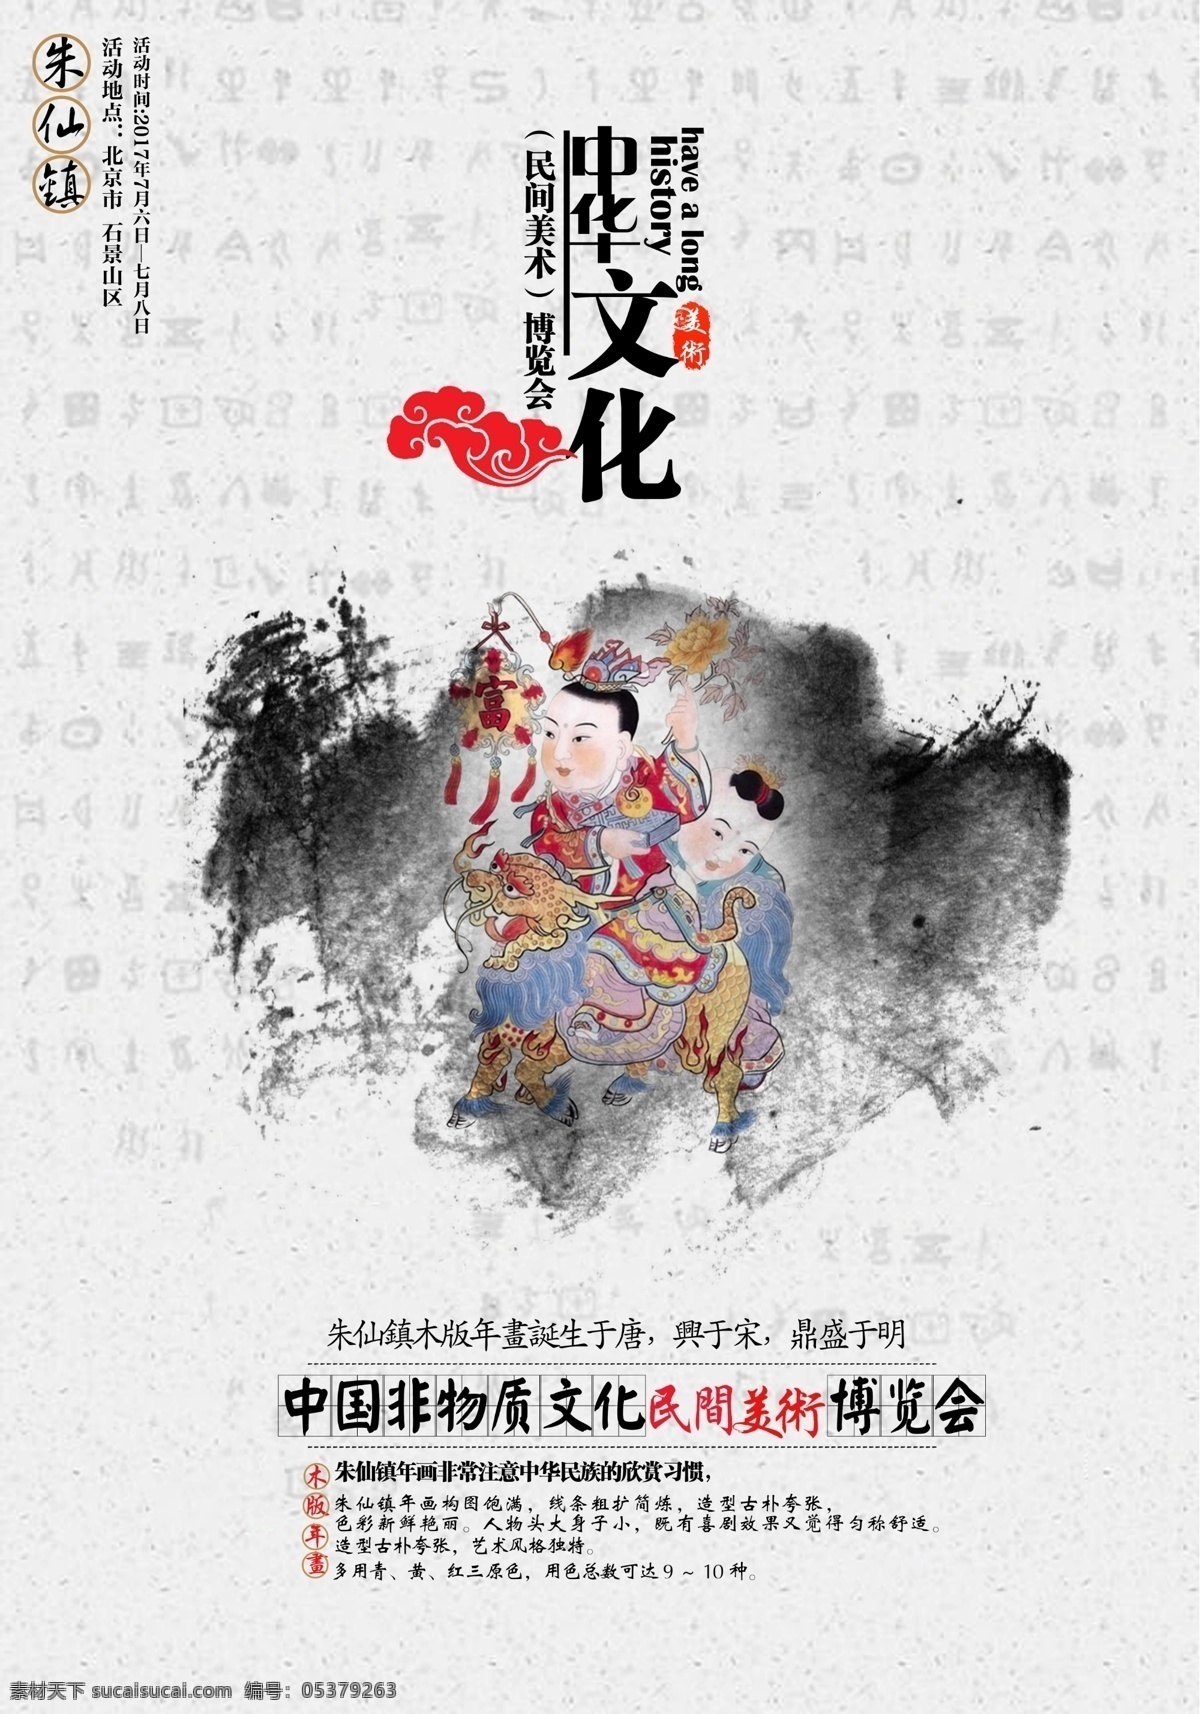 水墨 中华文化 民间艺术 海报 恭贺 年画 剪纸 过年 背景 banner 展板 风格 创意设计